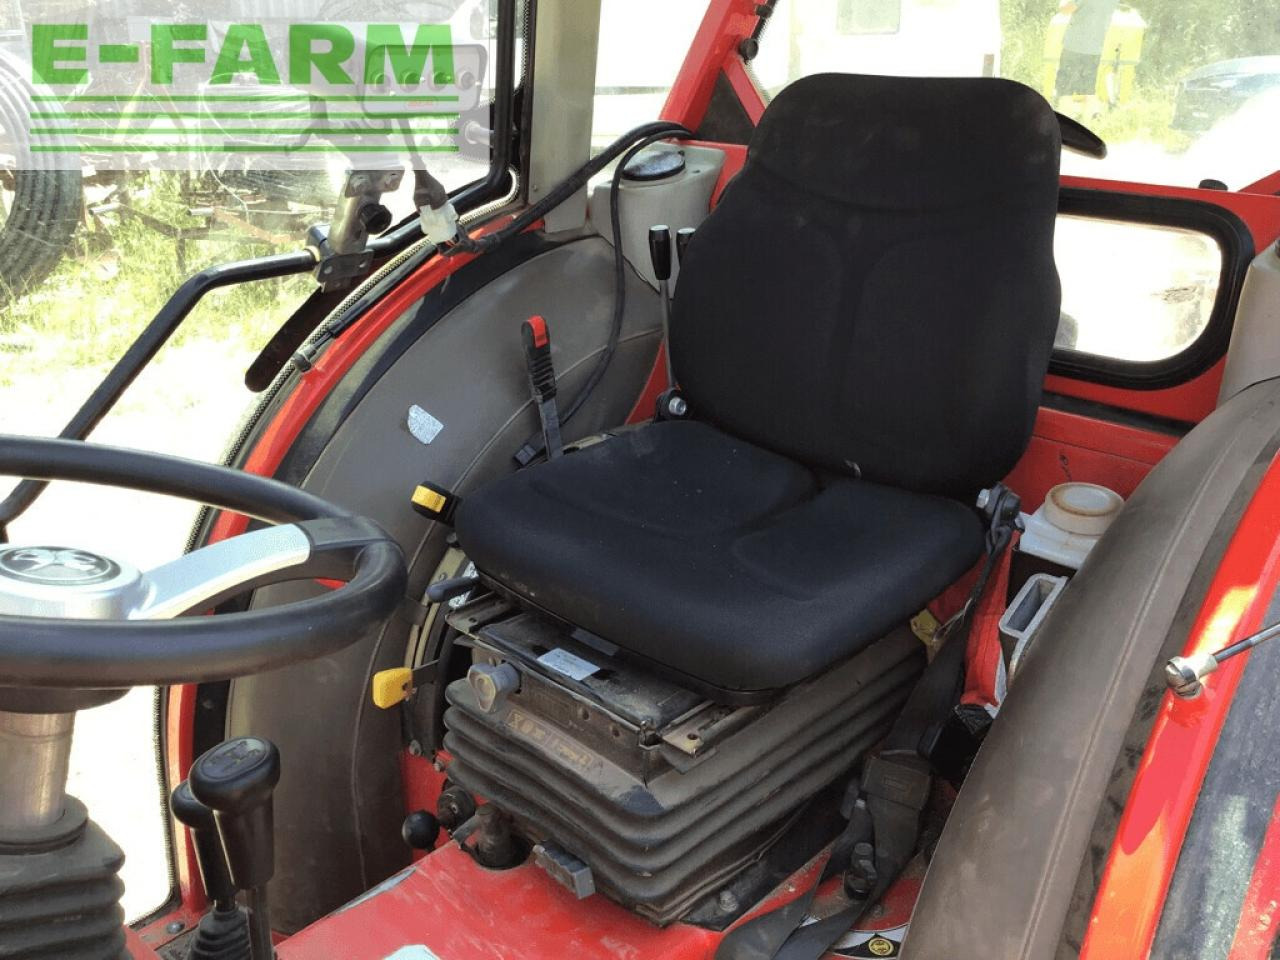 Farm tractor Carraro tgf 7800 s: picture 7